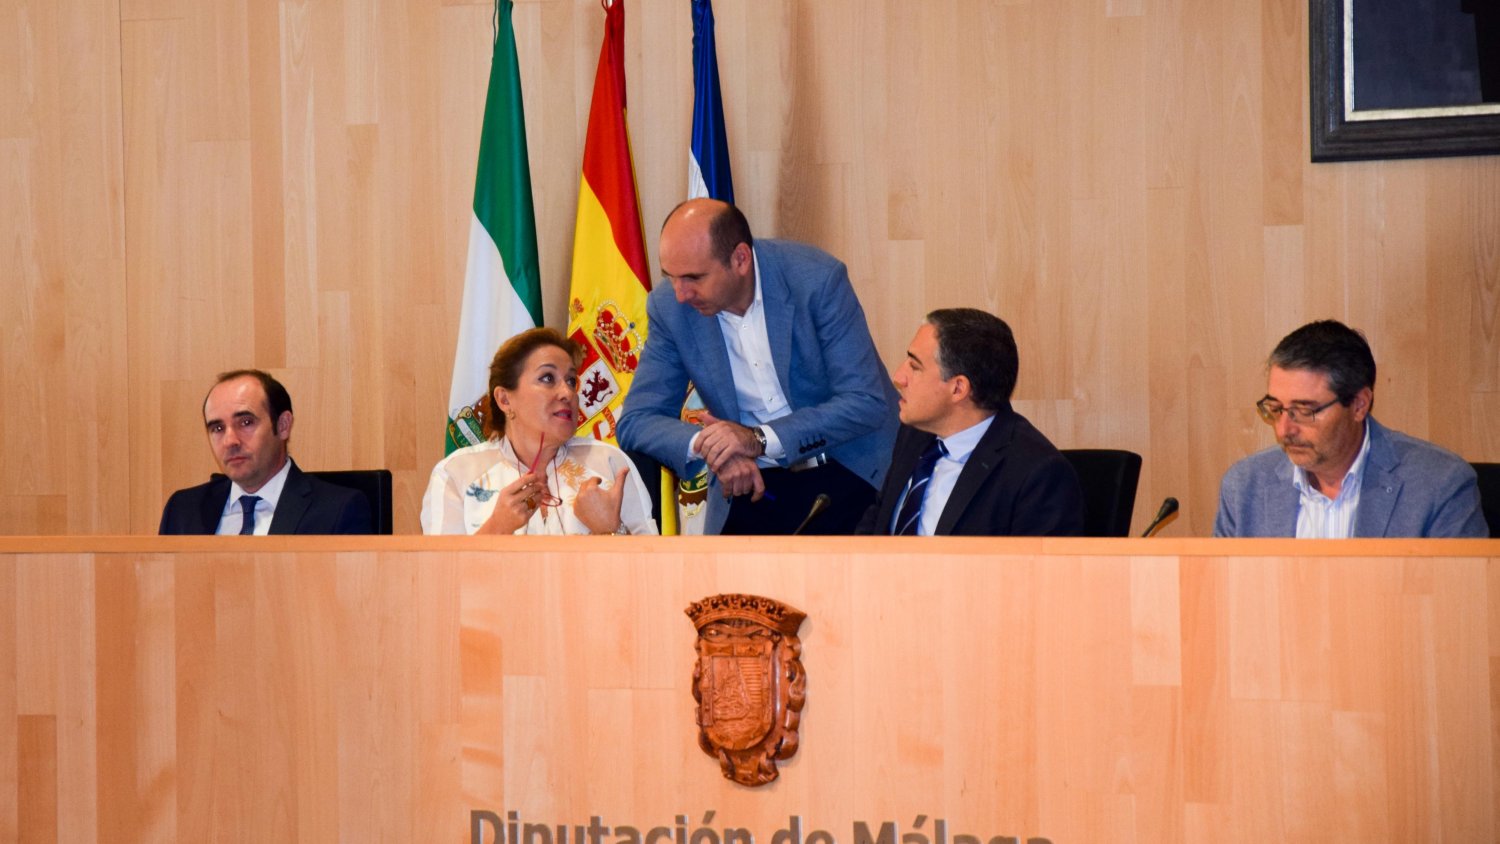 El pleno de la Diputación aprueba a propuesta del PSOE la recuperación de la gestión del MAD de Antequera a partir de 2019